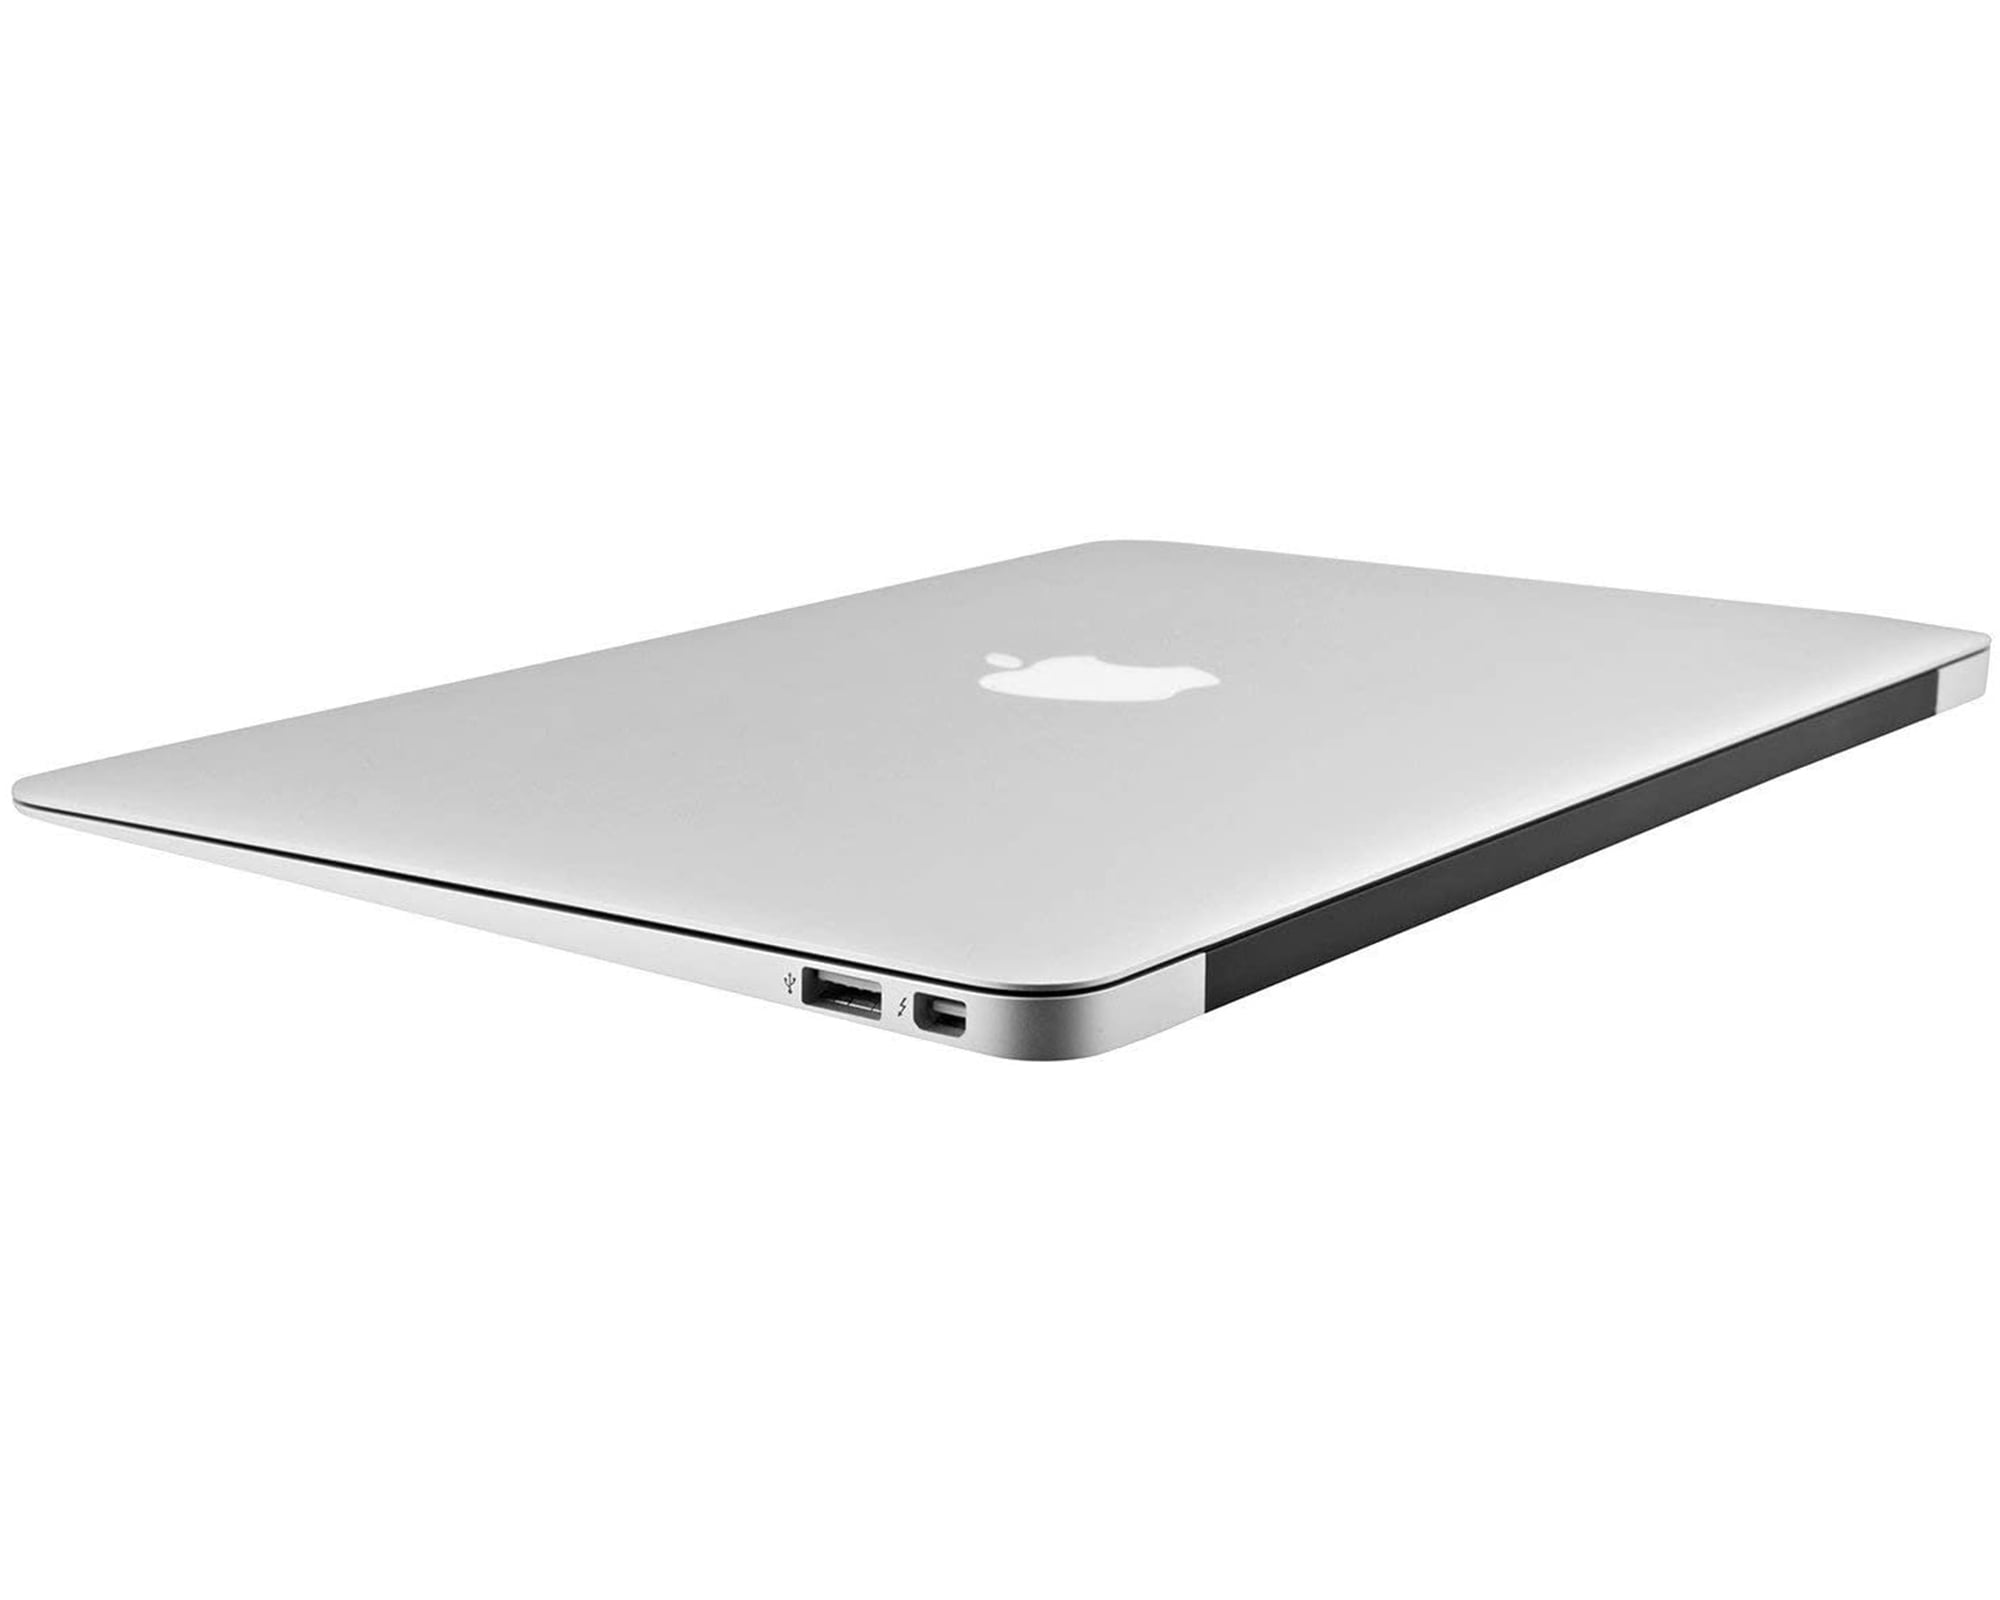 美 MacBook Air core i5 128GB/8GB シルバー | myglobaltax.com